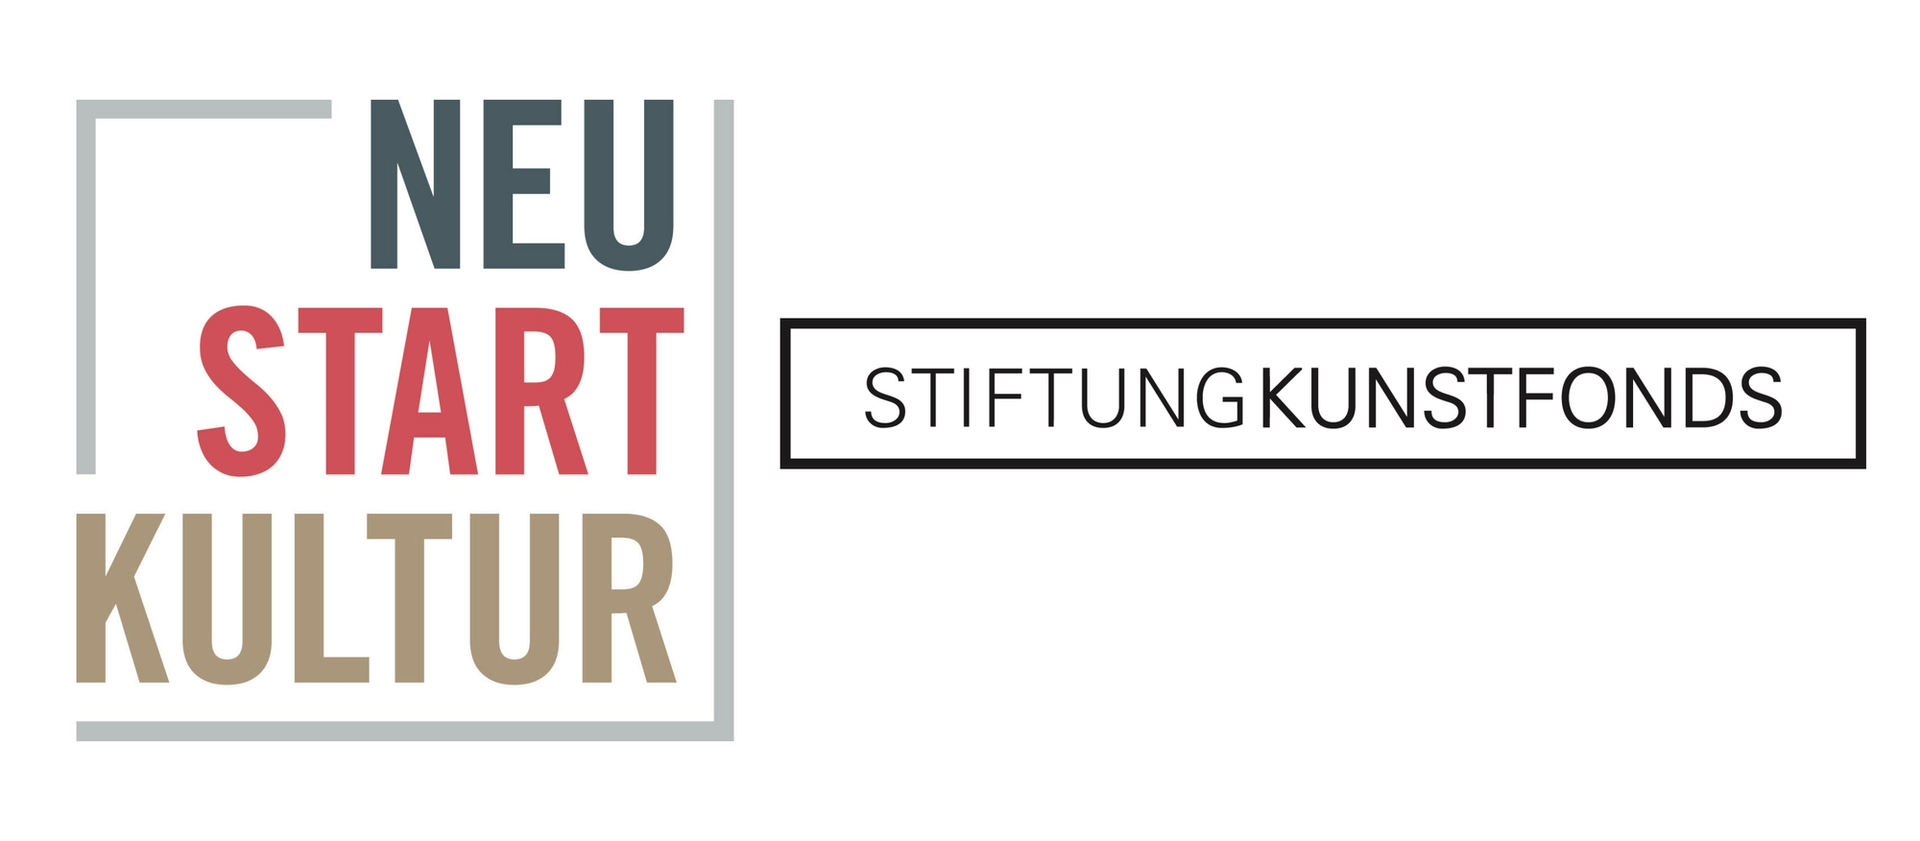 This project is kindly supported by Stiftung Kunstfonds in the frame of Neustart Kultur. / Diese Ausstellung wird durch die Stiftung Kunstfonds im Rahmen von Neustart Kultur unterstützt. Vielen Dank!